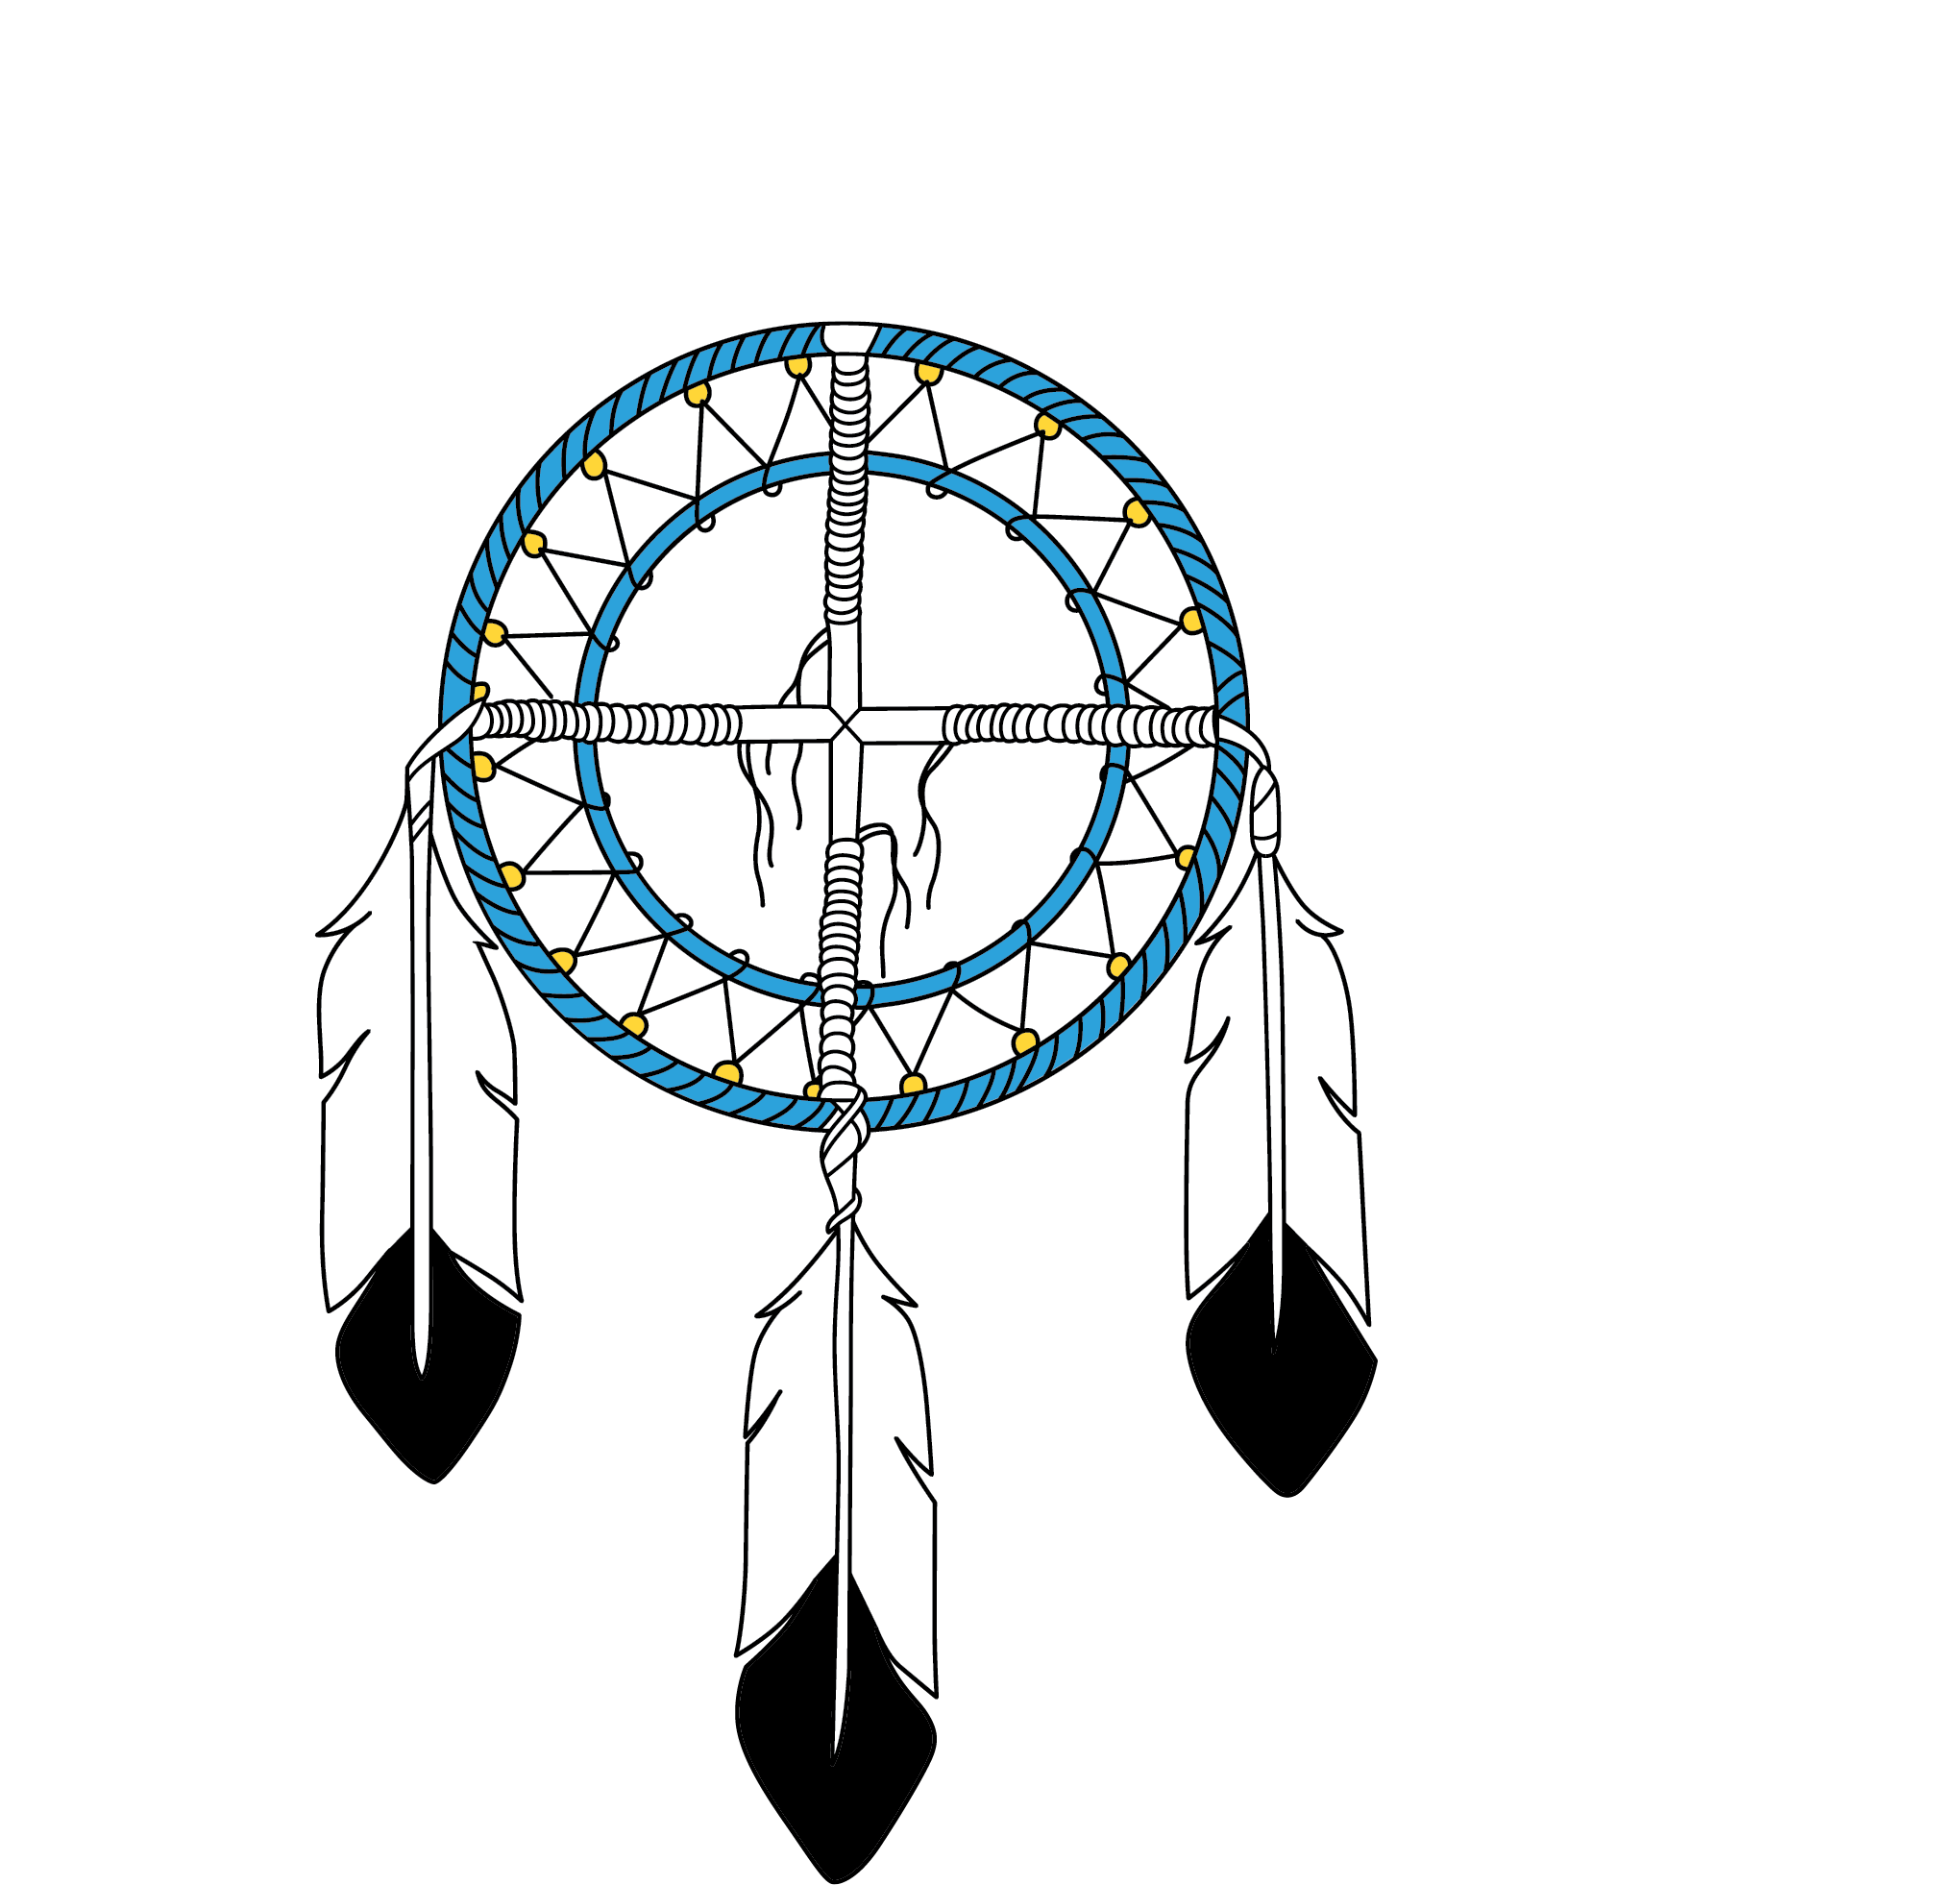 Choctaw Federal CU logo